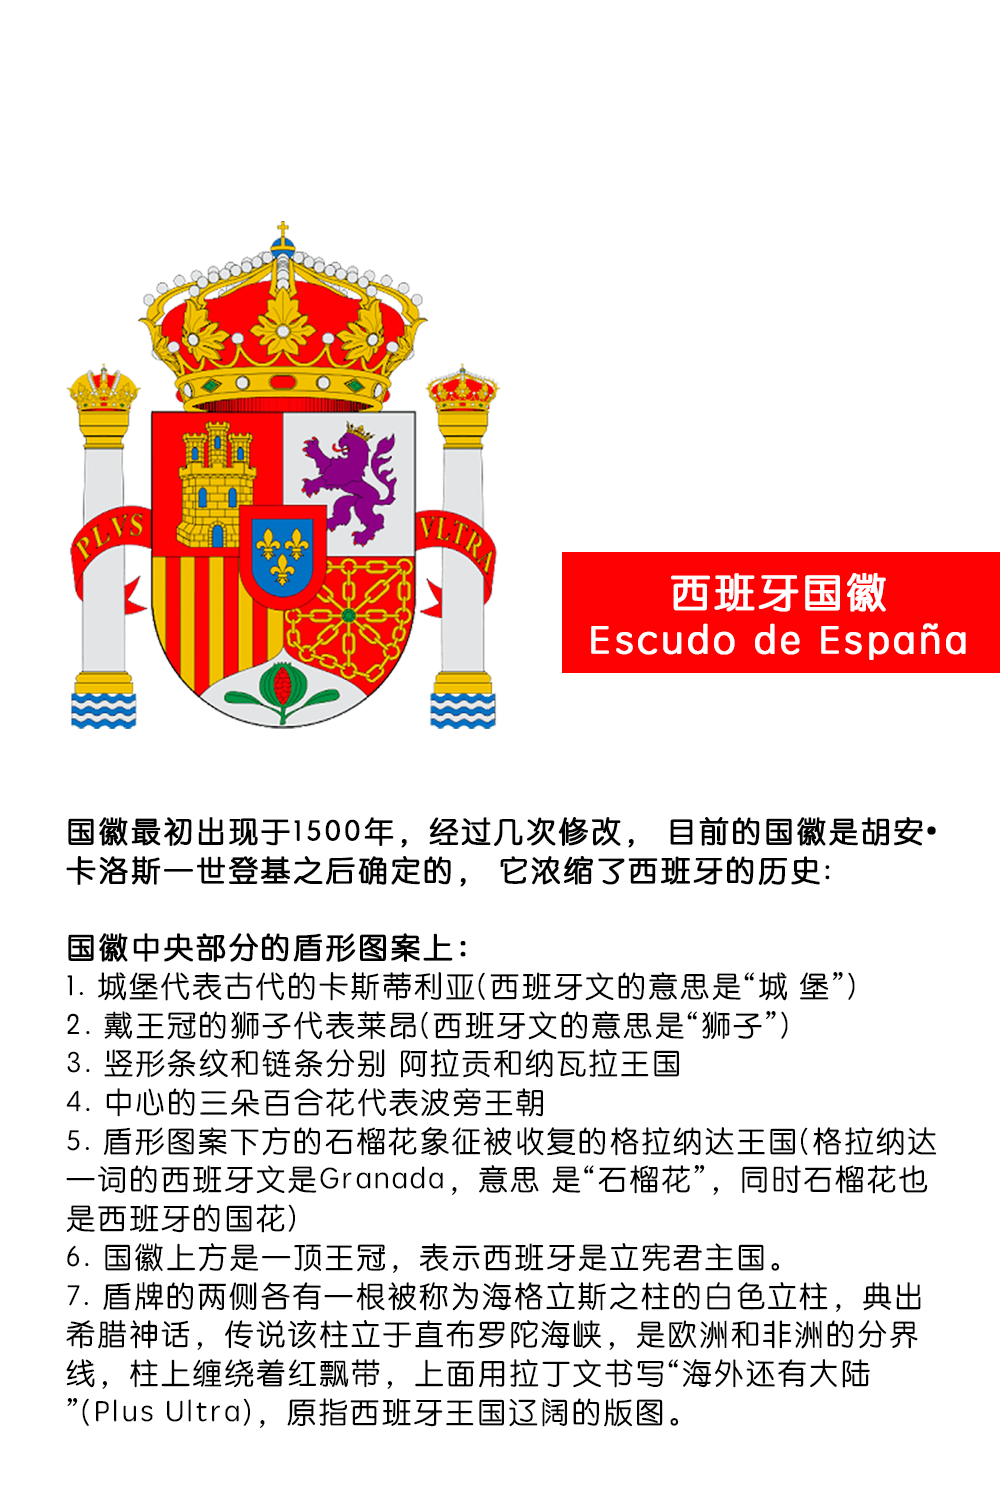 西班牙国徽中元素及意义 I 政府机构徽标